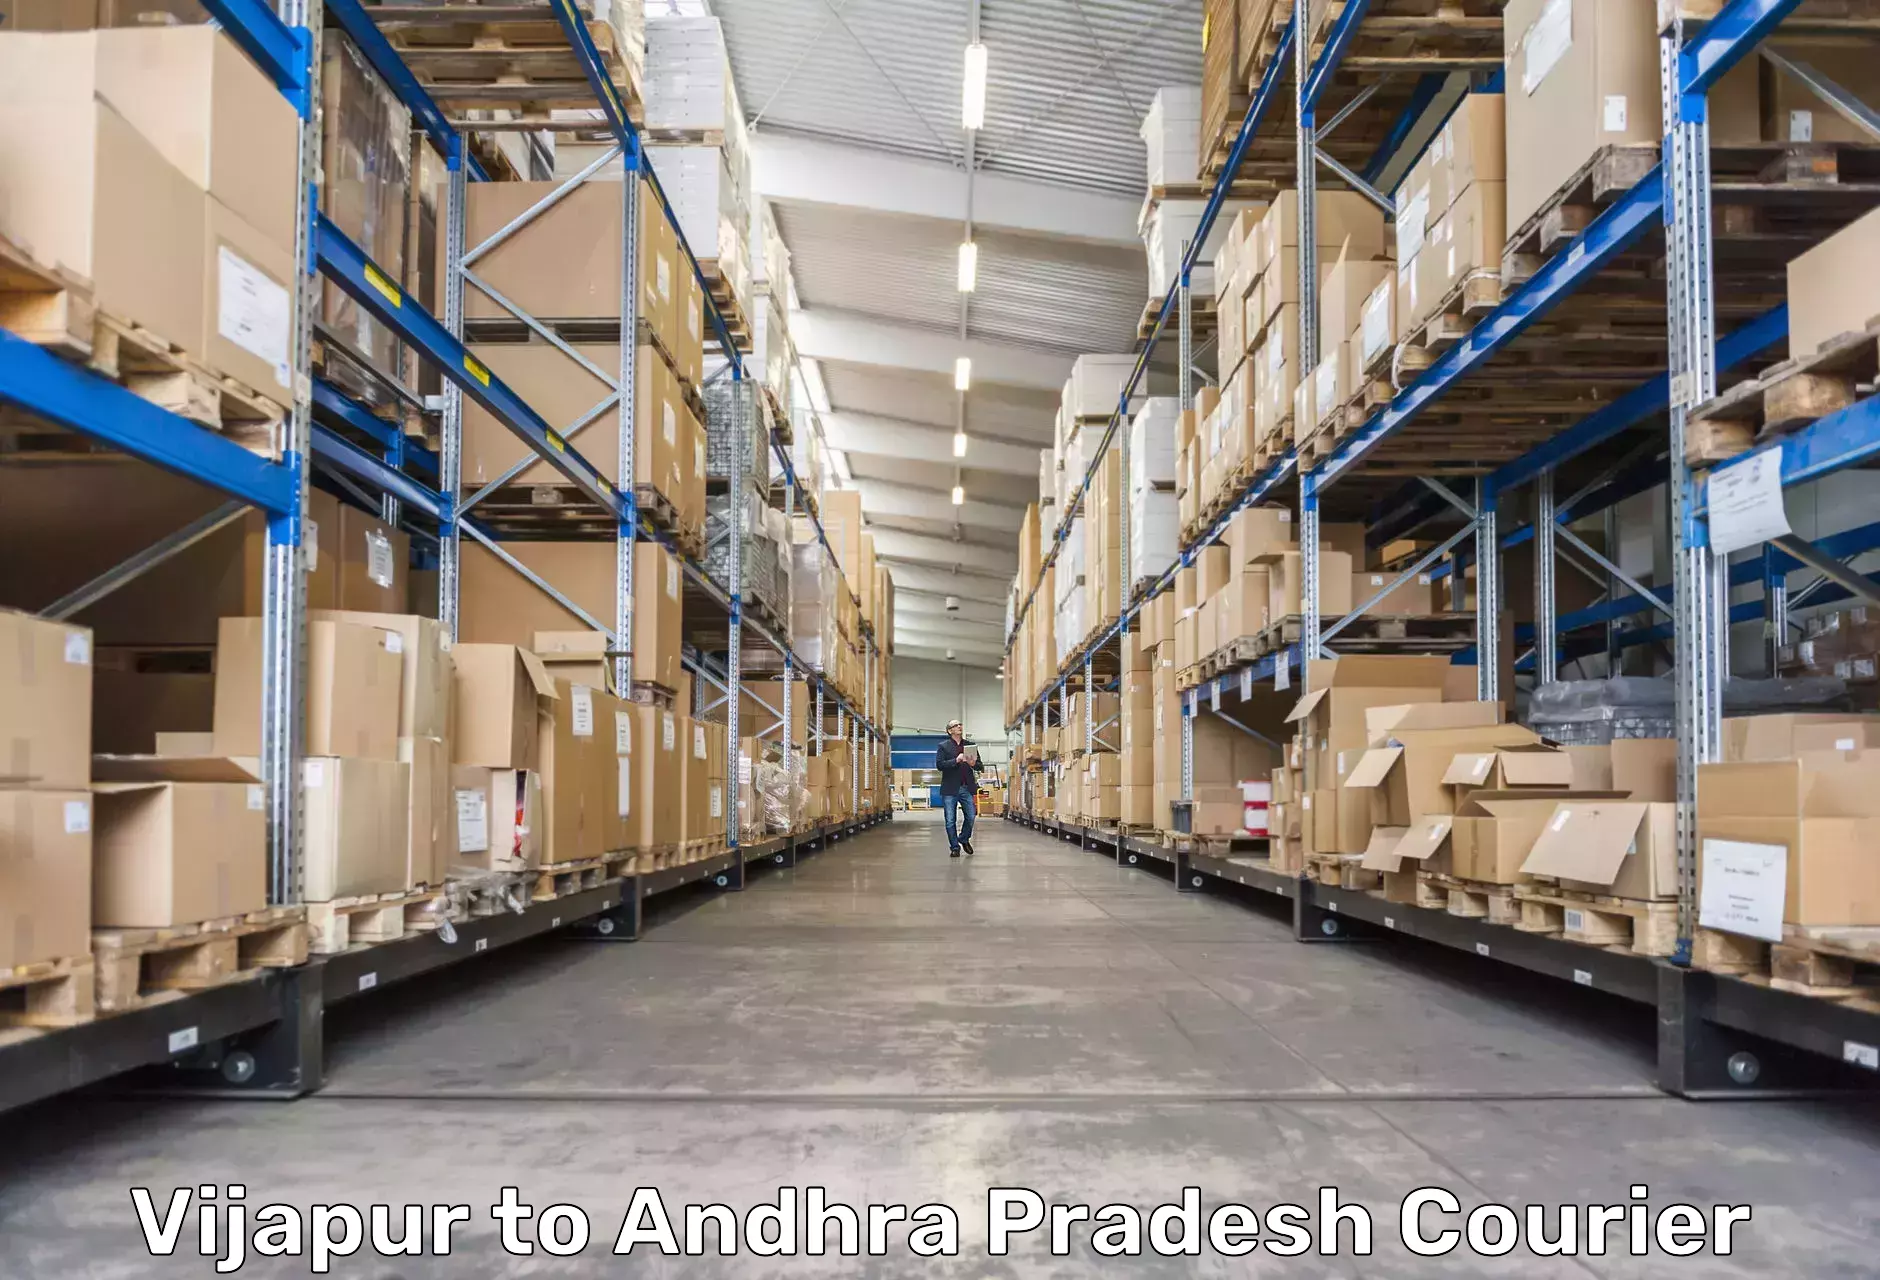 Digital courier platforms Vijapur to Andhra Pradesh